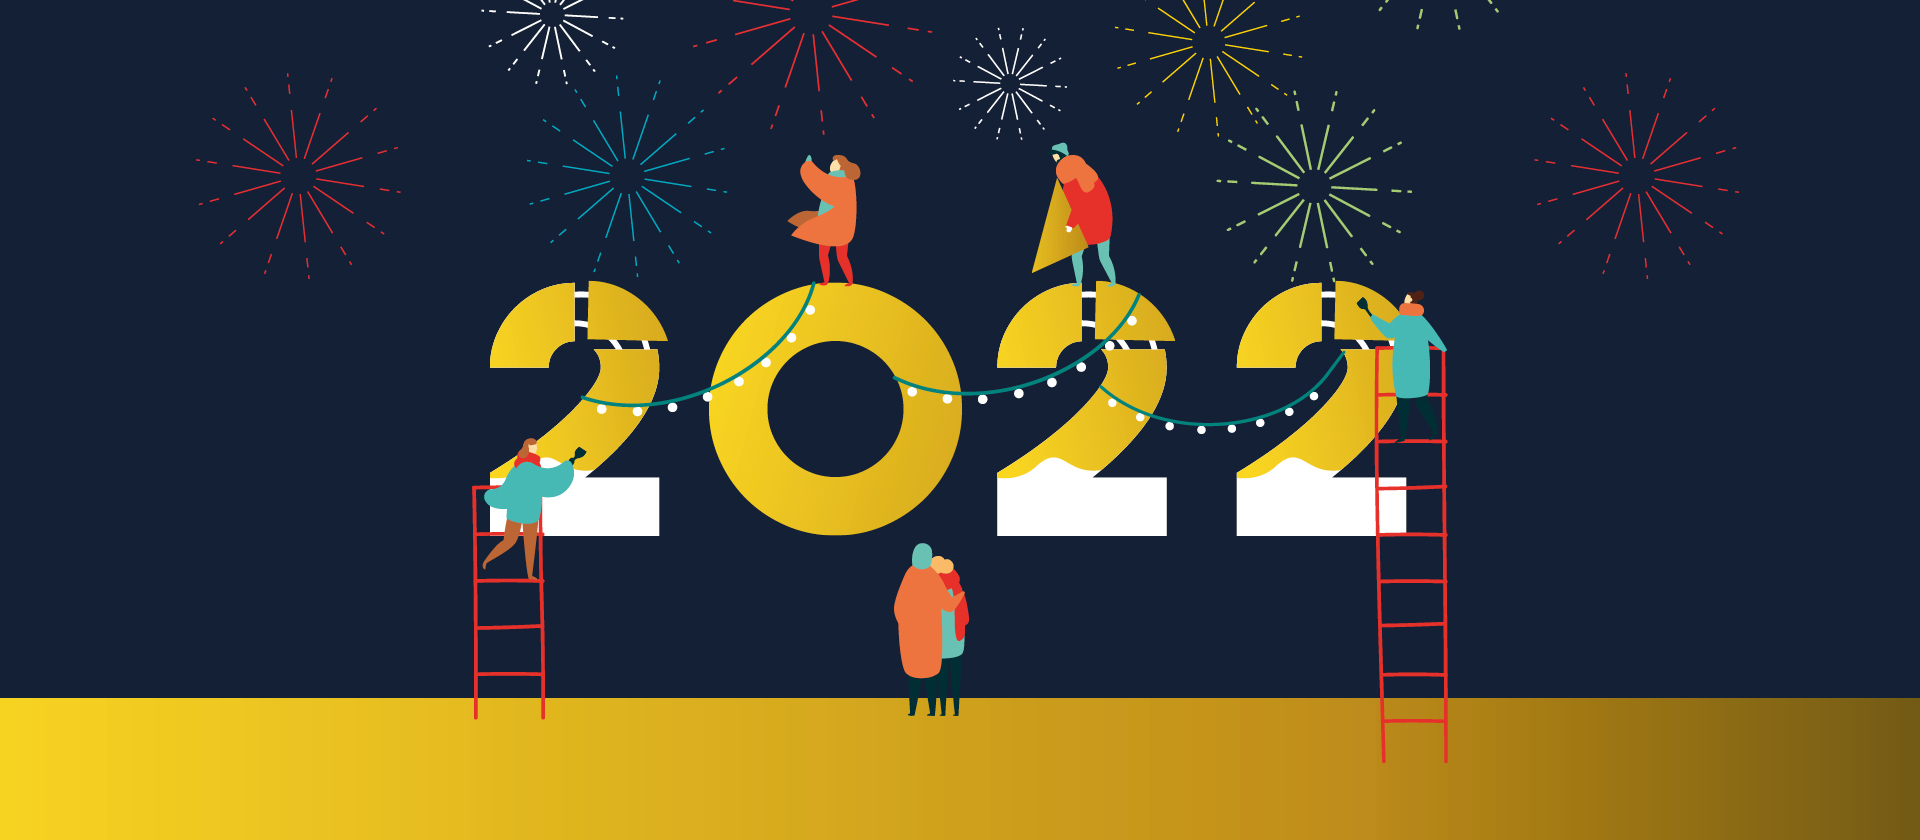 Arbeiten am neuen Jahr - der Neujahrgruß von hr2-kultur 2022